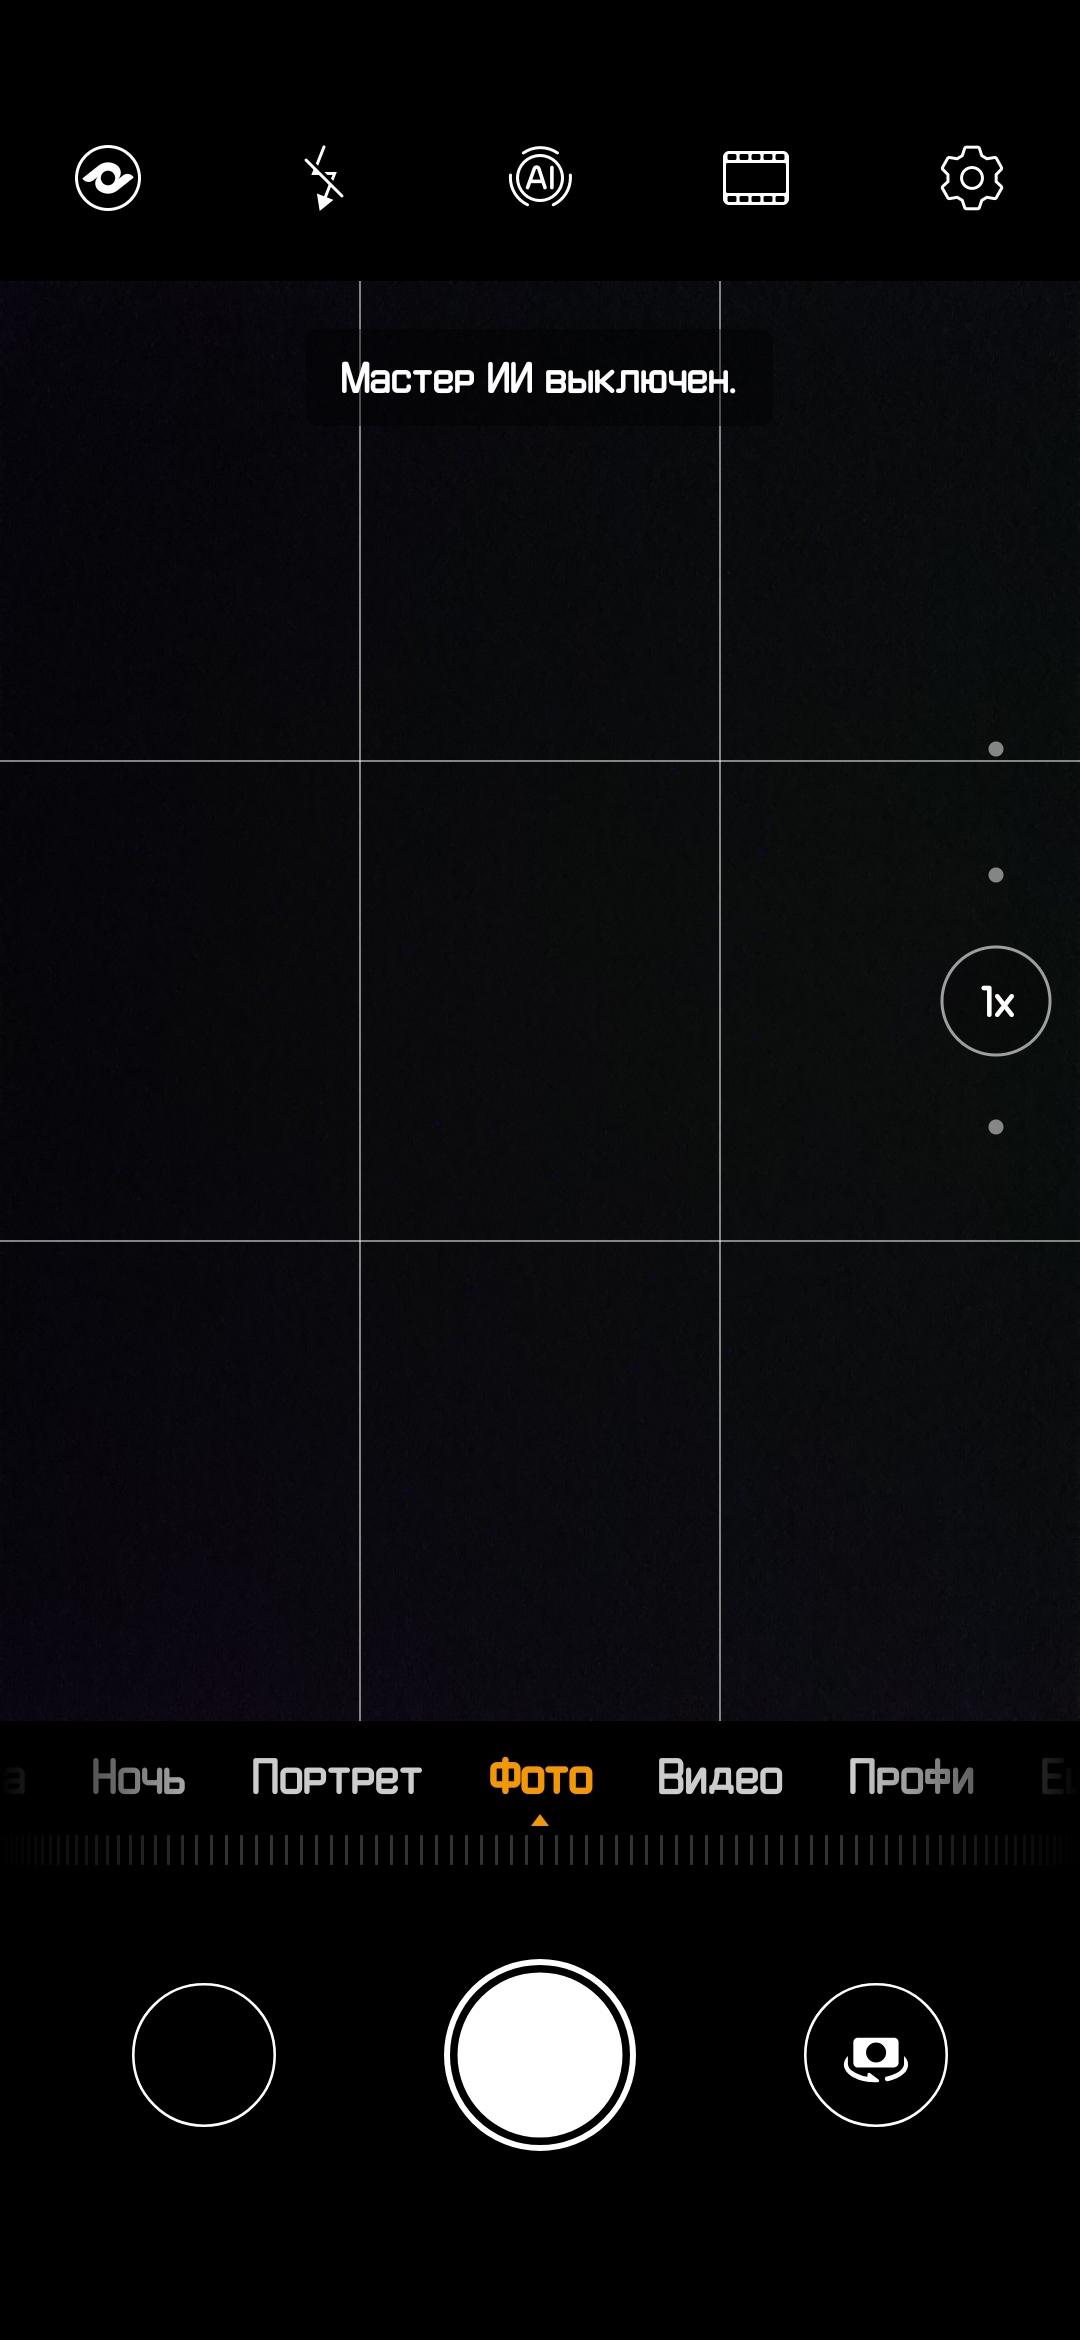 Обзор Huawei P30 Pro: прибор ночного видения-324